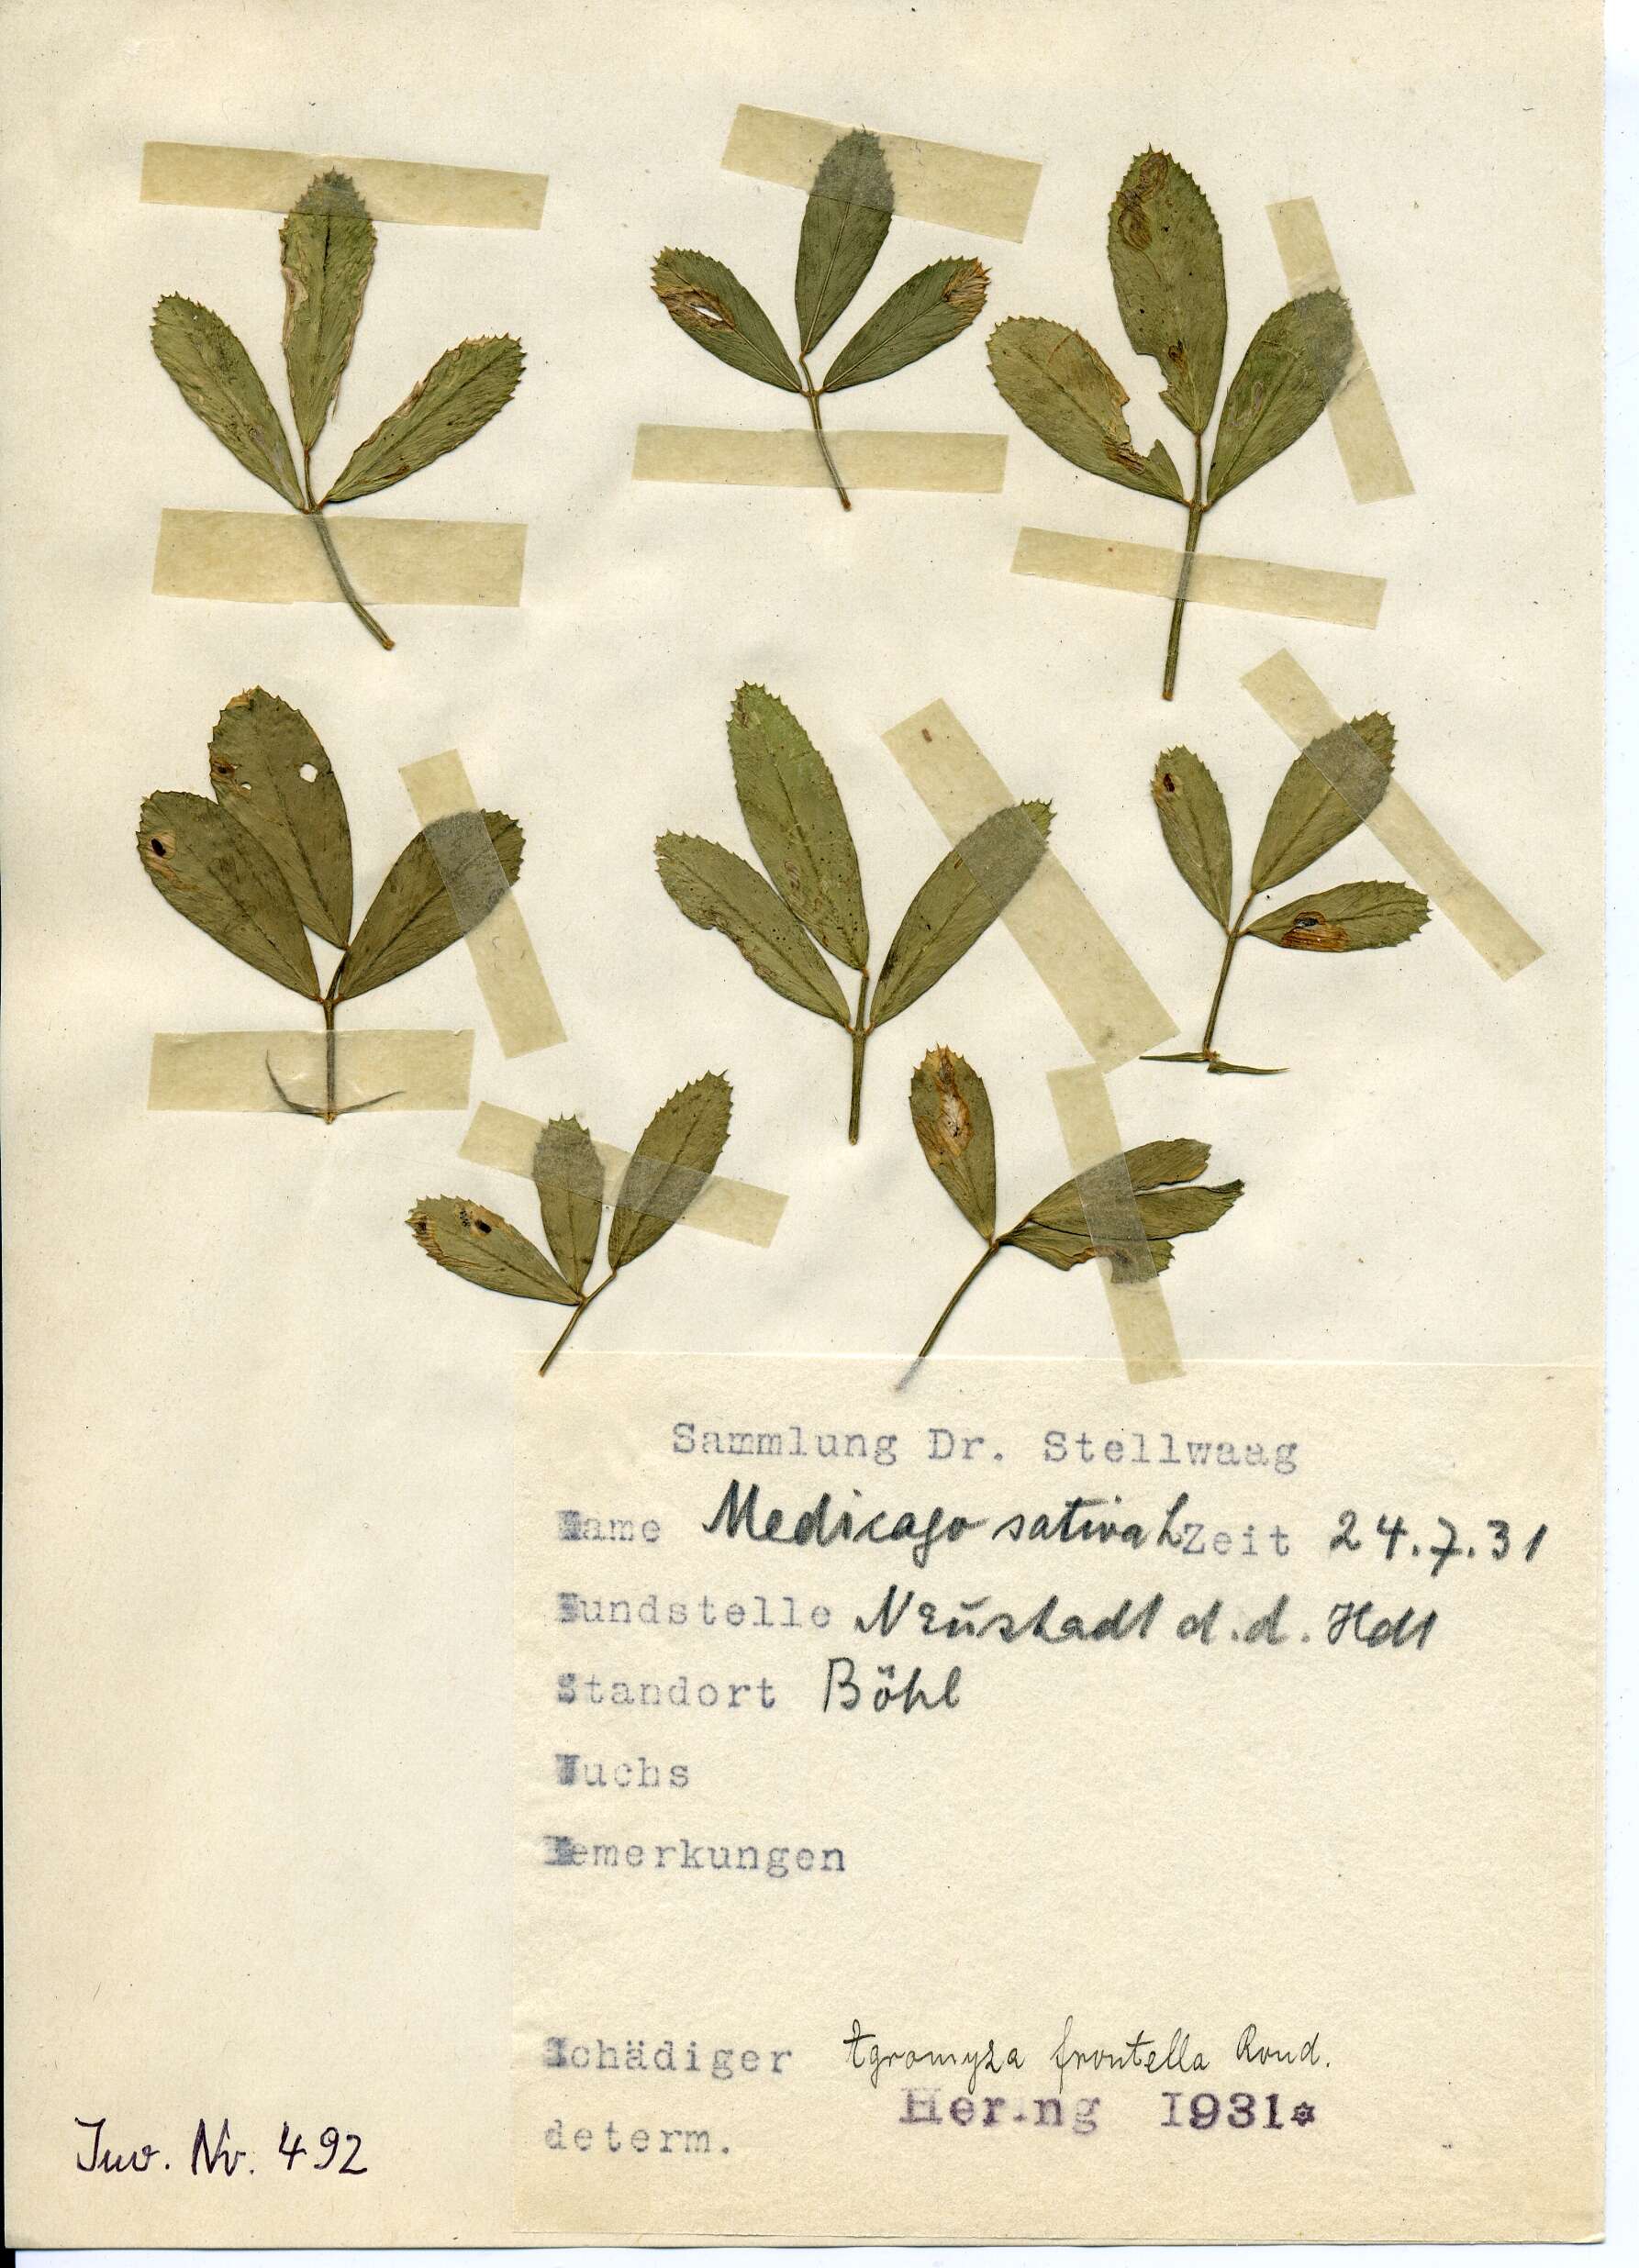 Imagem de Agromyza frontella (Rondani 1874)